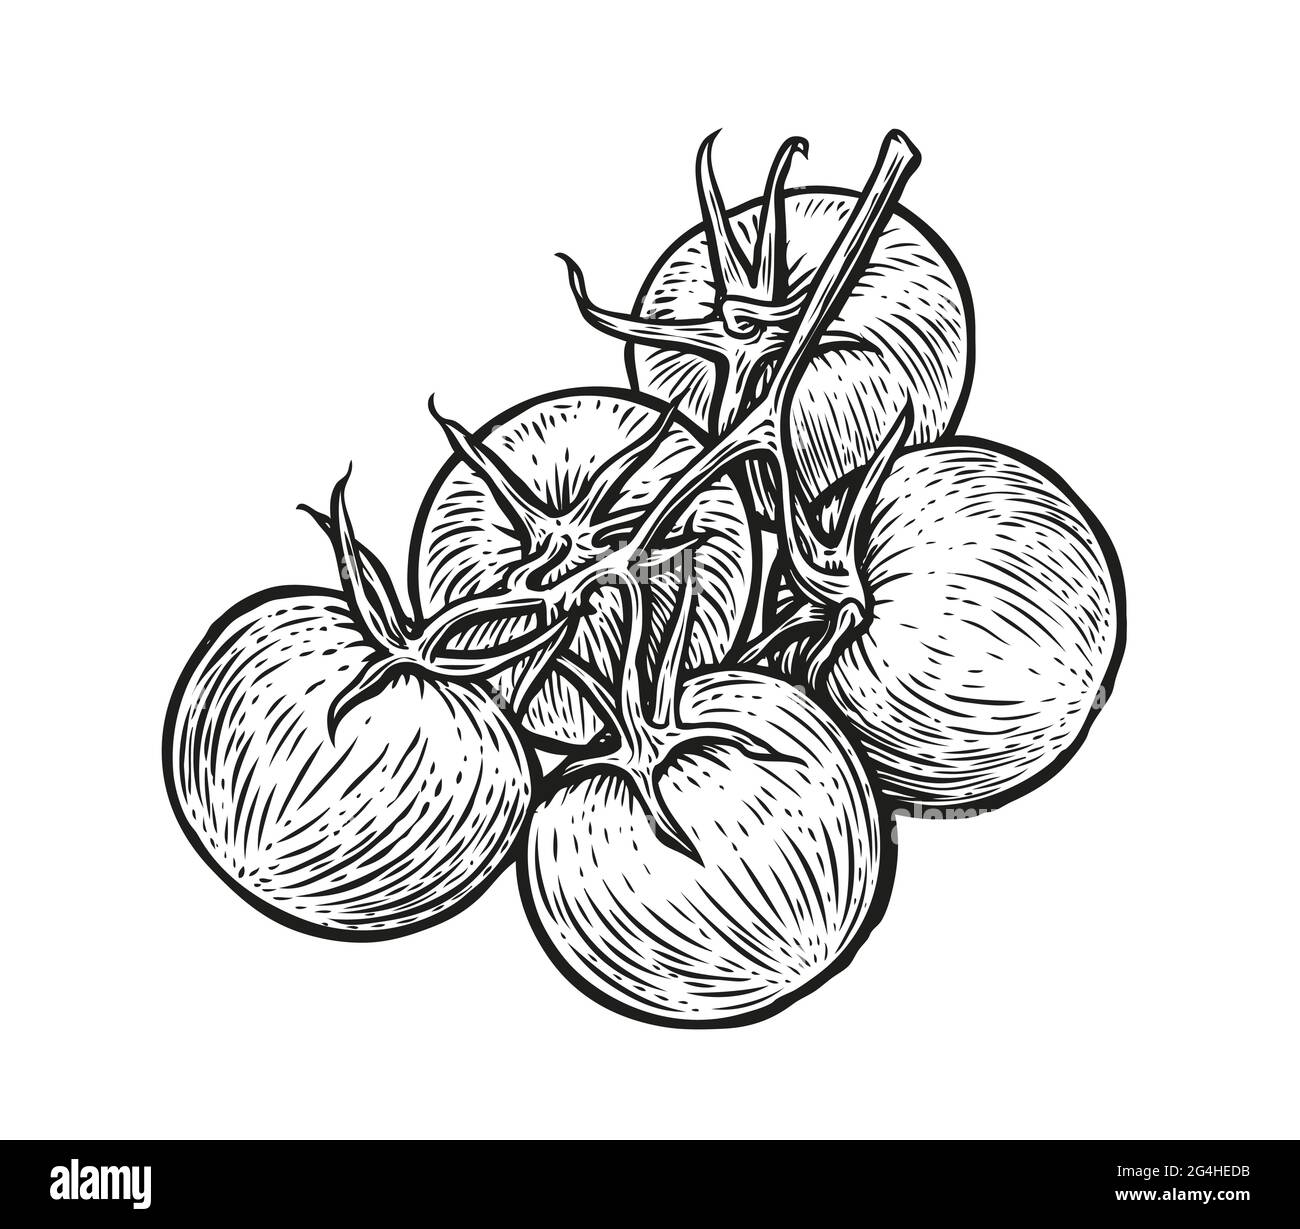 Tomaten auf Ast. Handgezeichnetes Gemüse in Skizze. Vektorgrafik Stock Vektor